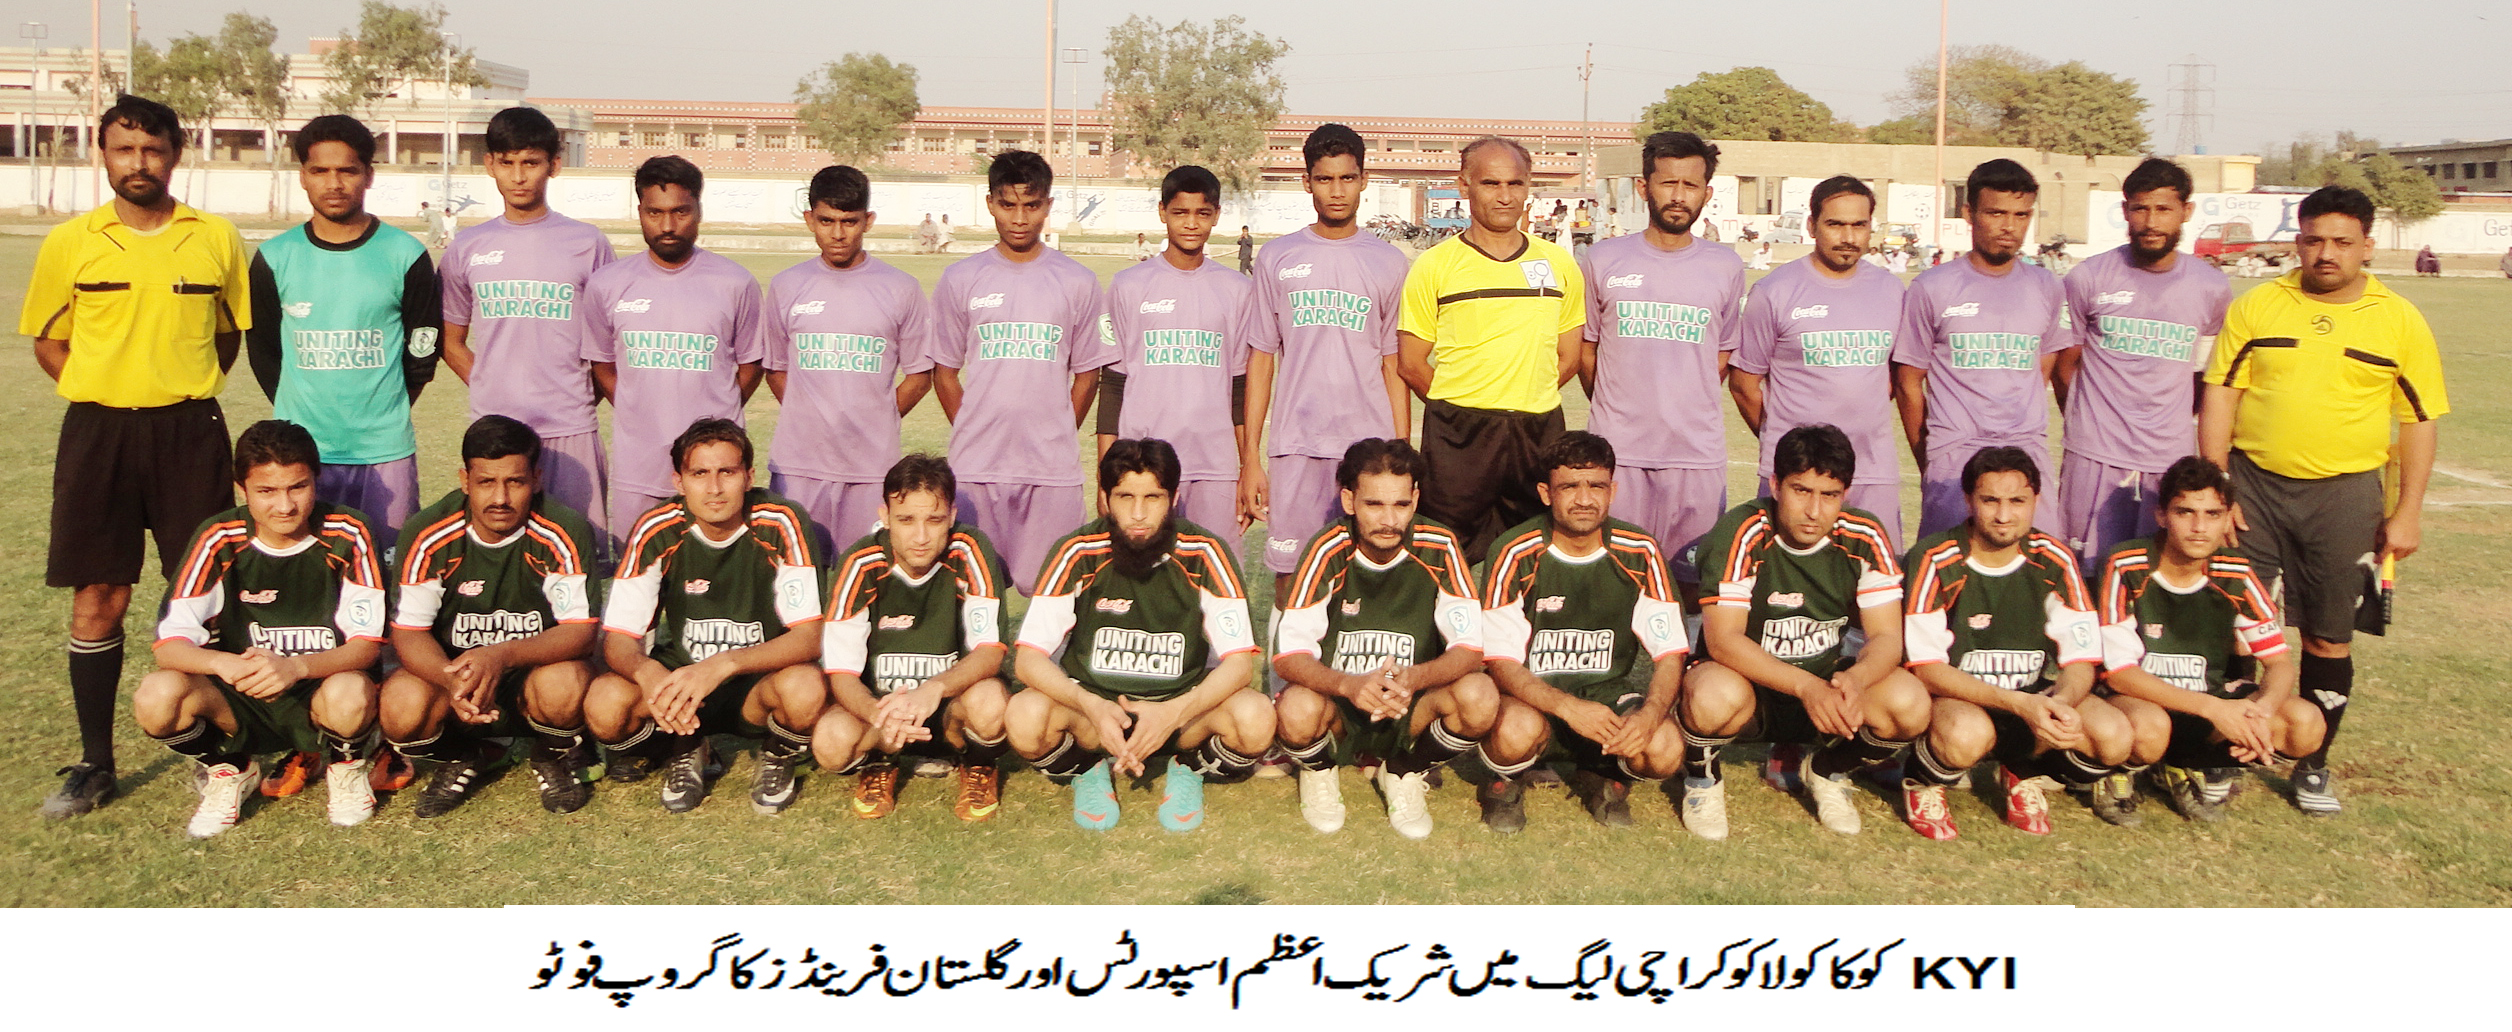 Karachi Football League Update-07.03.14